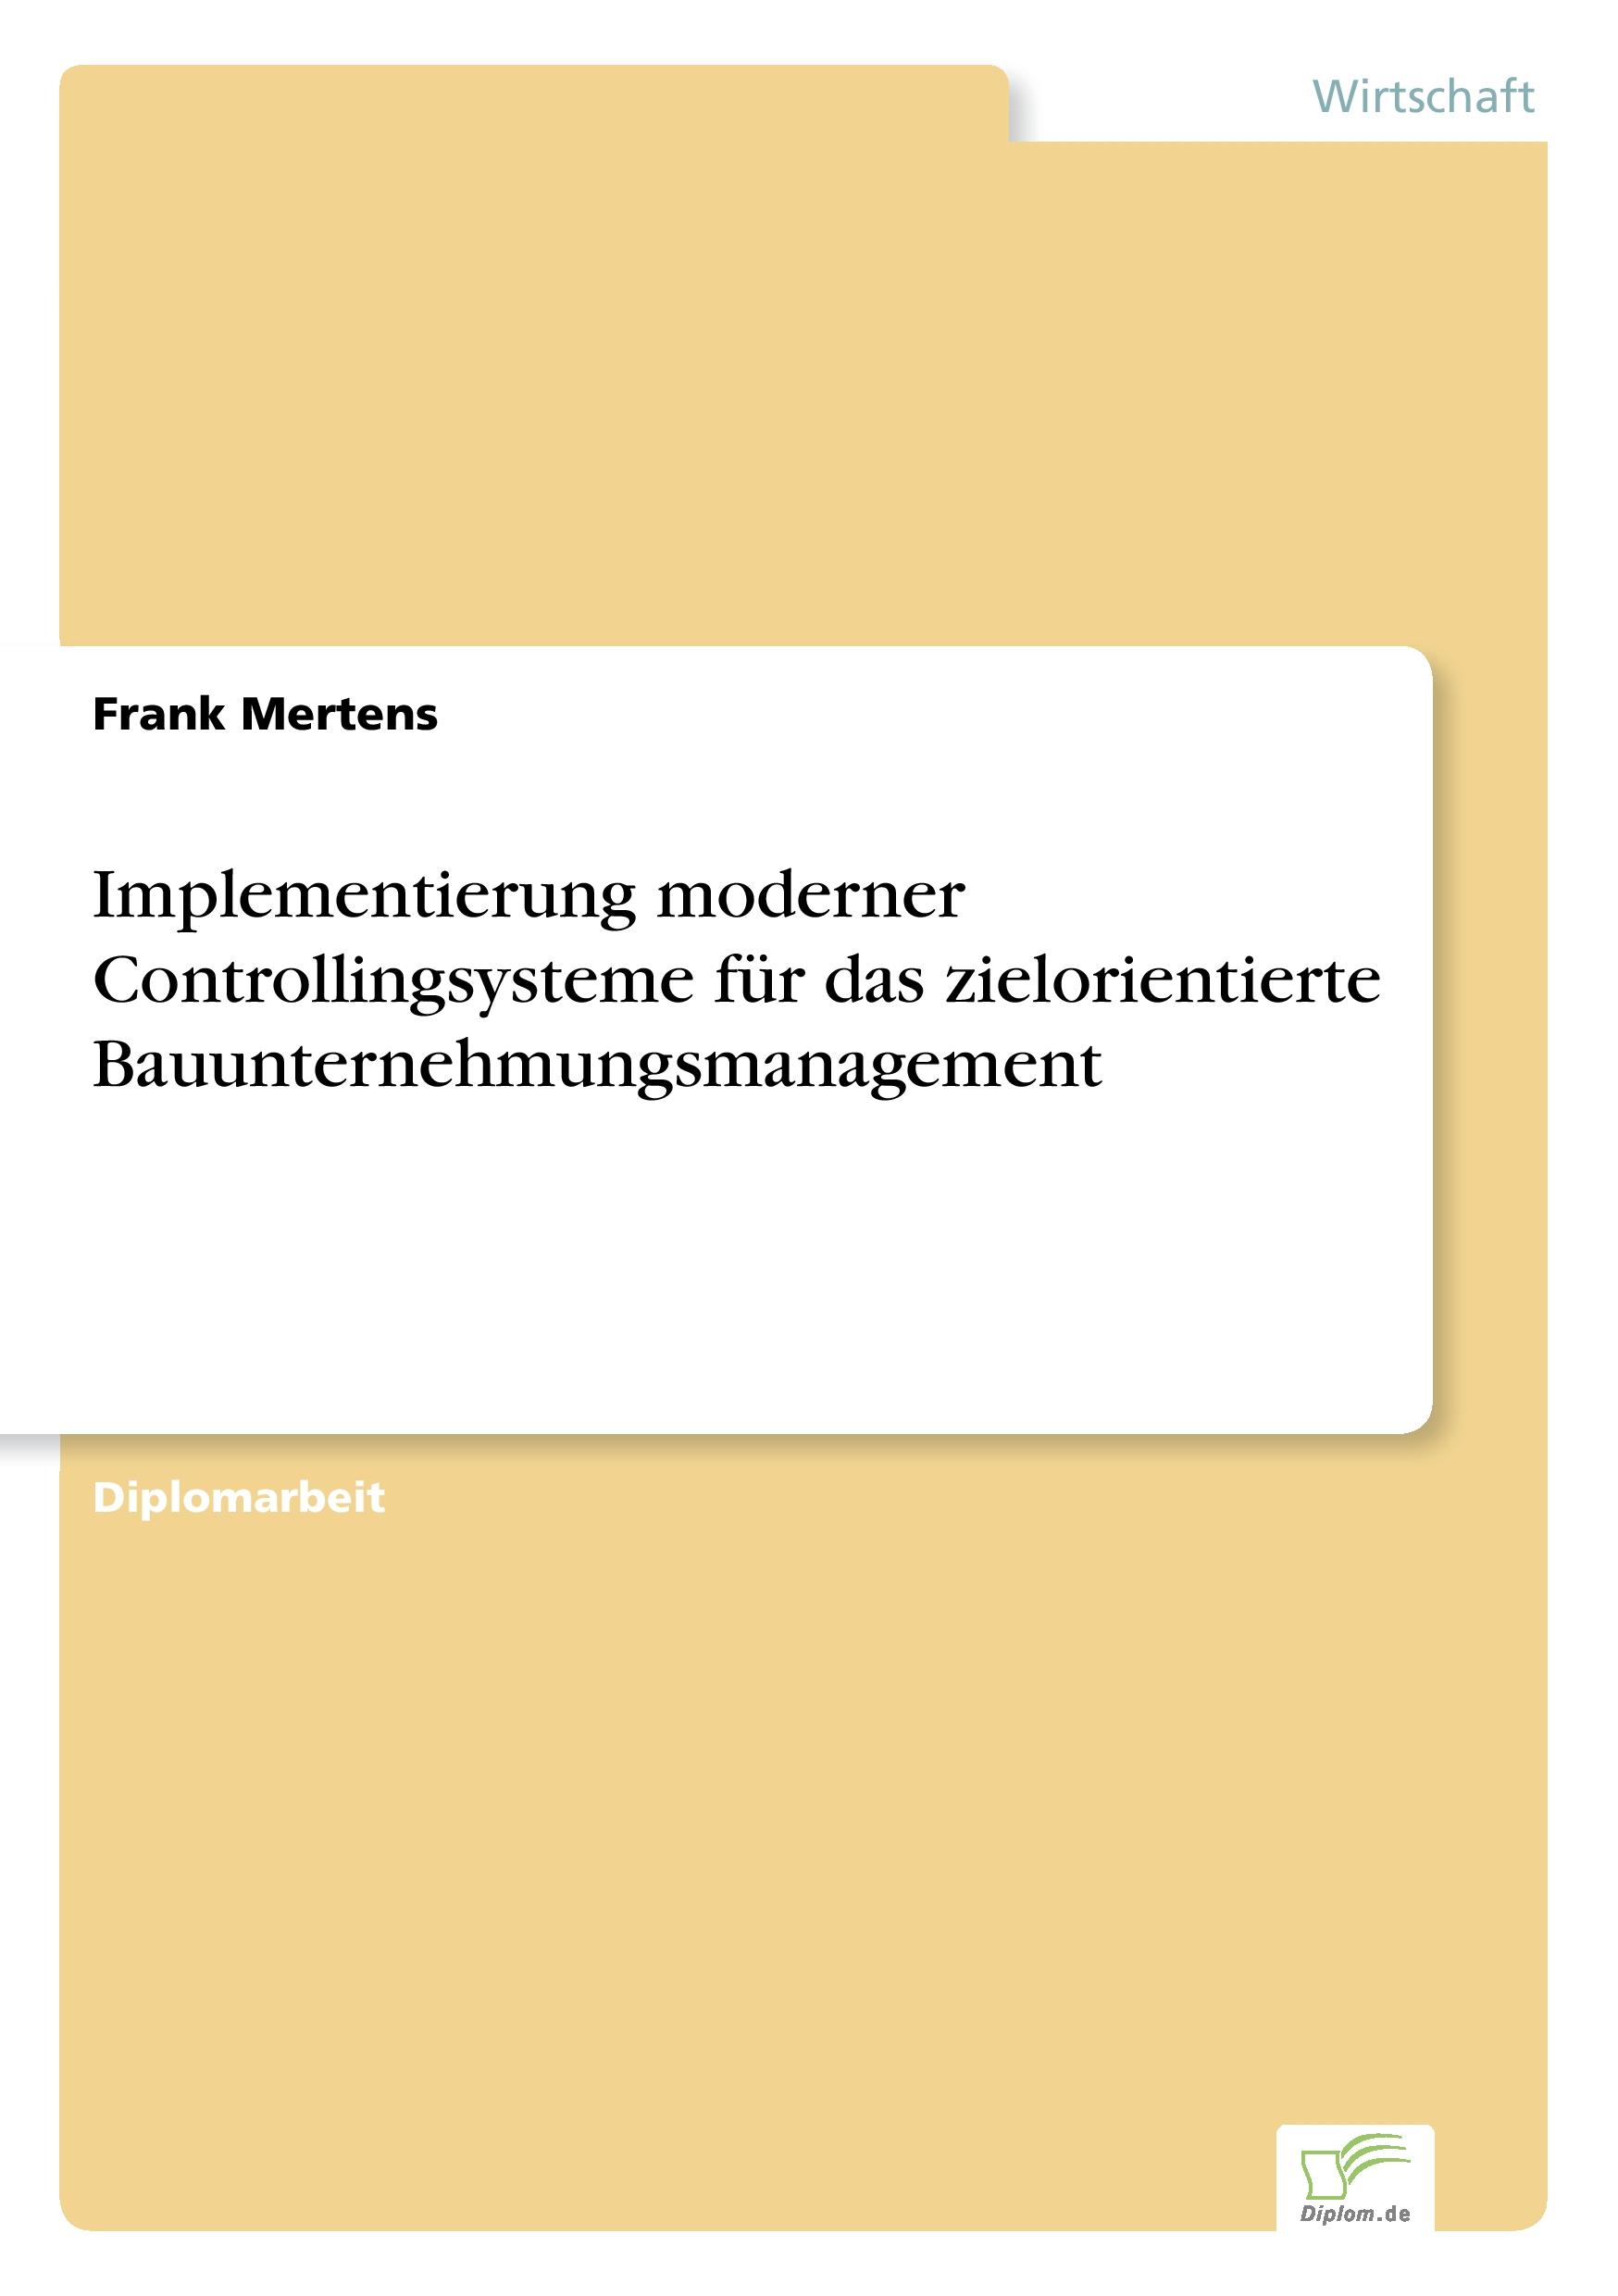 Implementierung moderner Controllingsysteme für das zielorientierte Bauunternehmungsmanagement  Frank Mertens  Taschenbuch  Paperback  Deutsch  2001 - Mertens, Frank